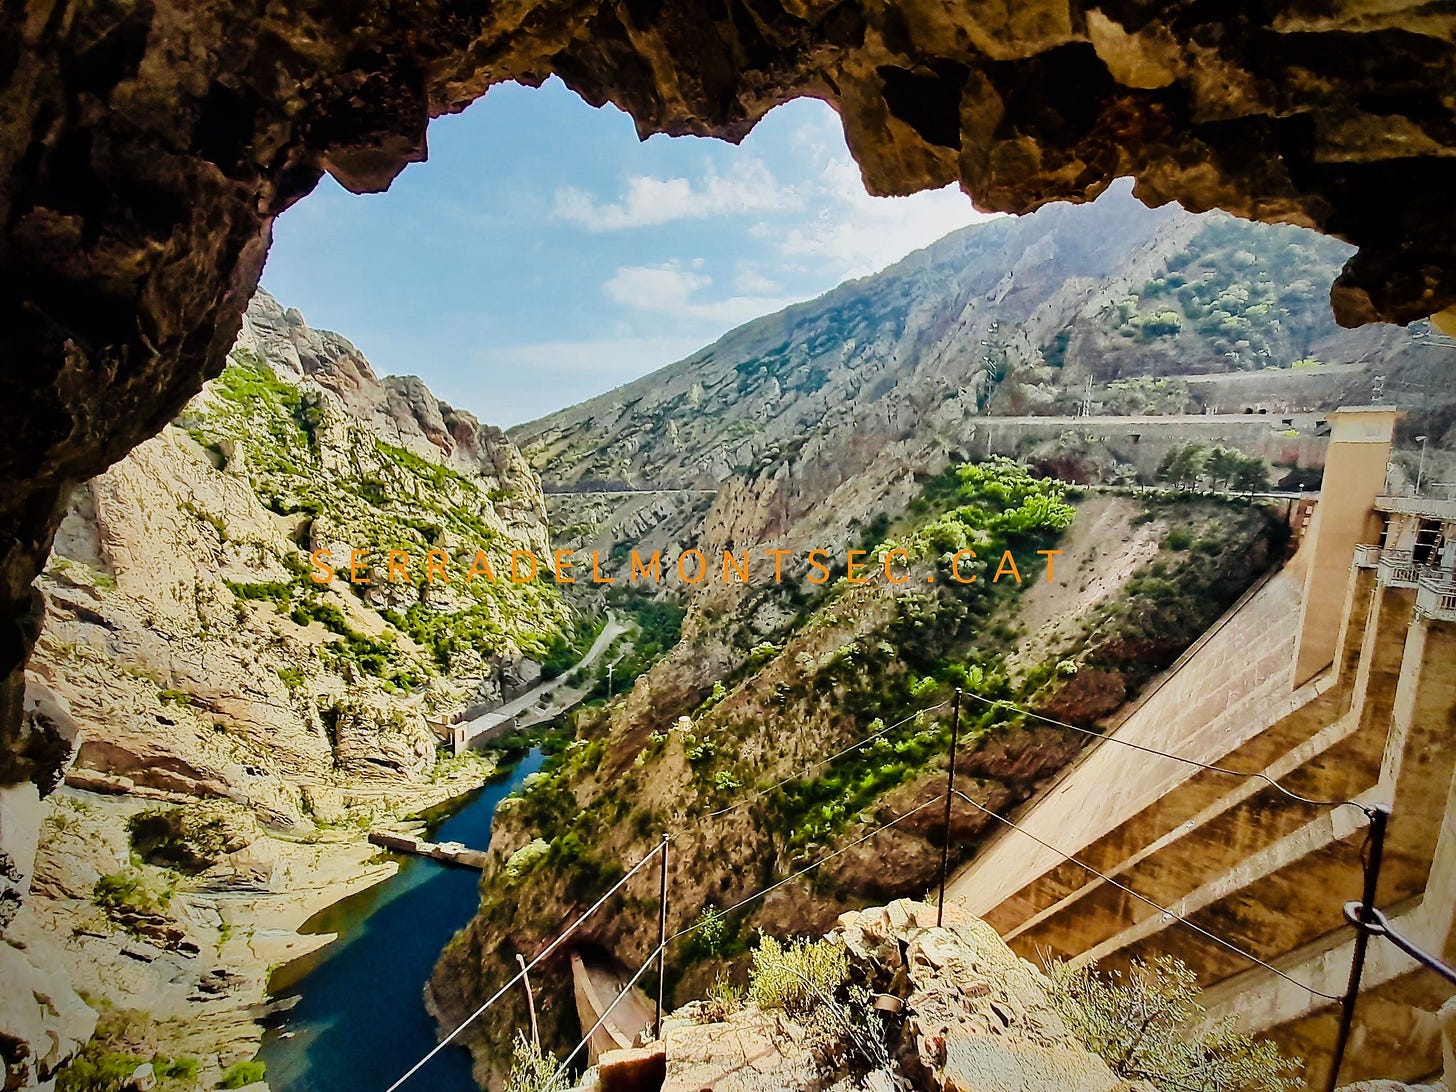 Pas d’Escales des de la presa d’Escales, situada sota el Roc de Sant Cugat (1320 m), considerat l’extrem nord de la Clotada d’Areny, o la Terreta, o la Noguerola. Tremp, Pallars Jussà. Lleida Catalunya.